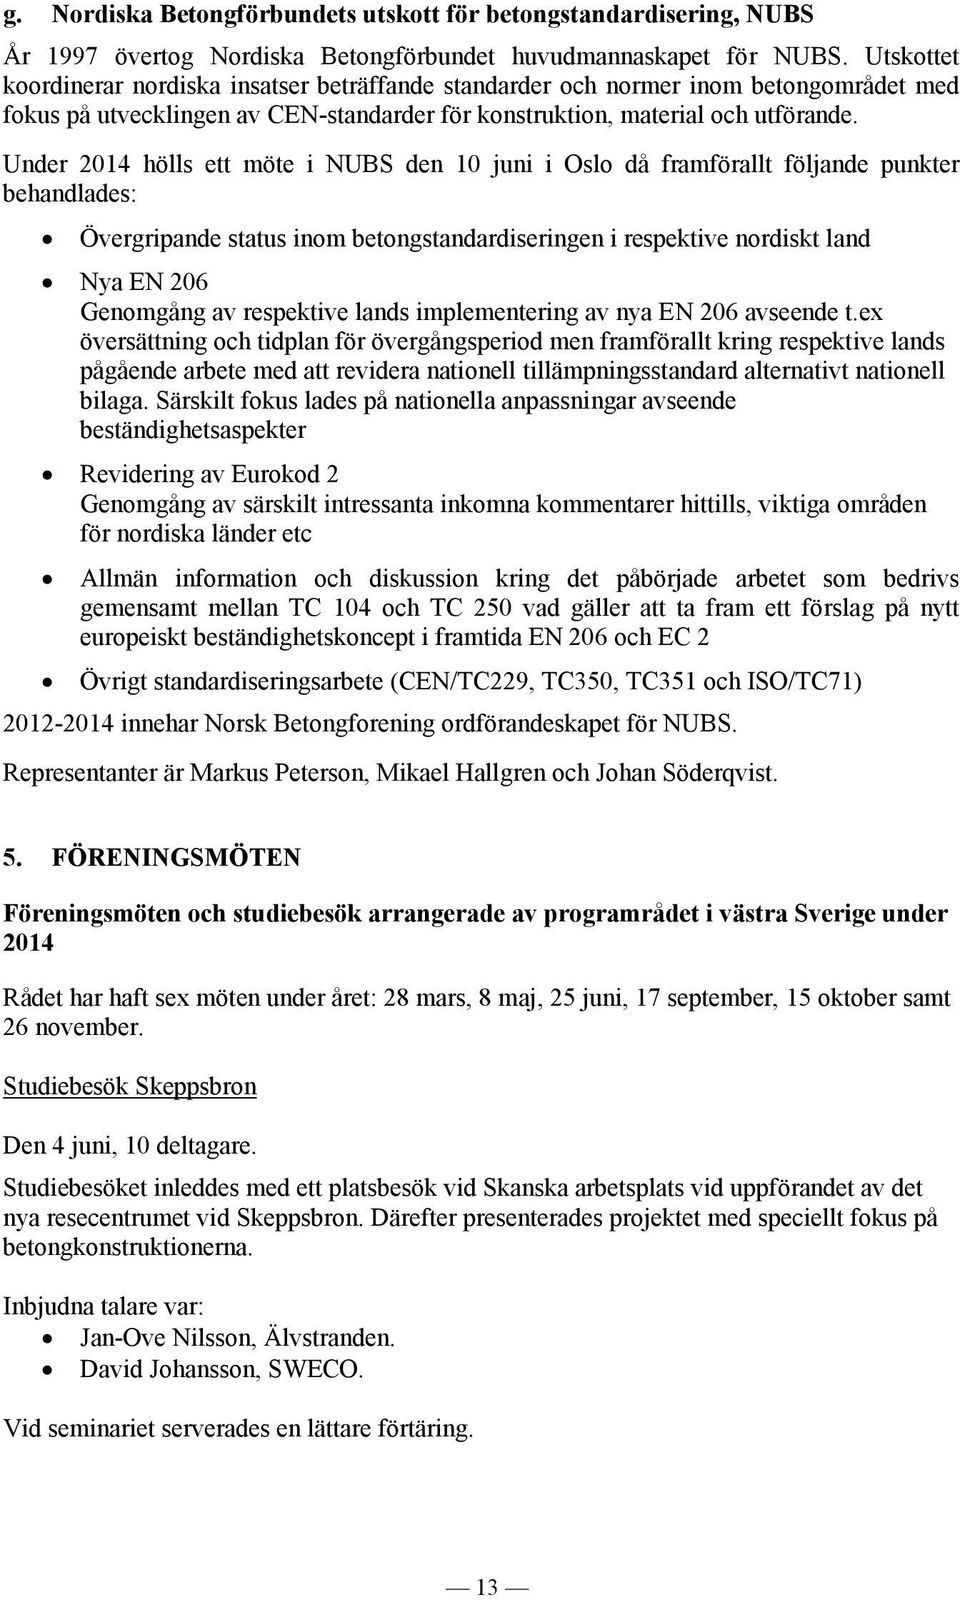 Under 2014 hölls ett möte i NUBS den 10 juni i Oslo då framförallt följande punkter behandlades: Övergripande status inom betongstandardiseringen i respektive nordiskt land Nya EN 206 Genomgång av